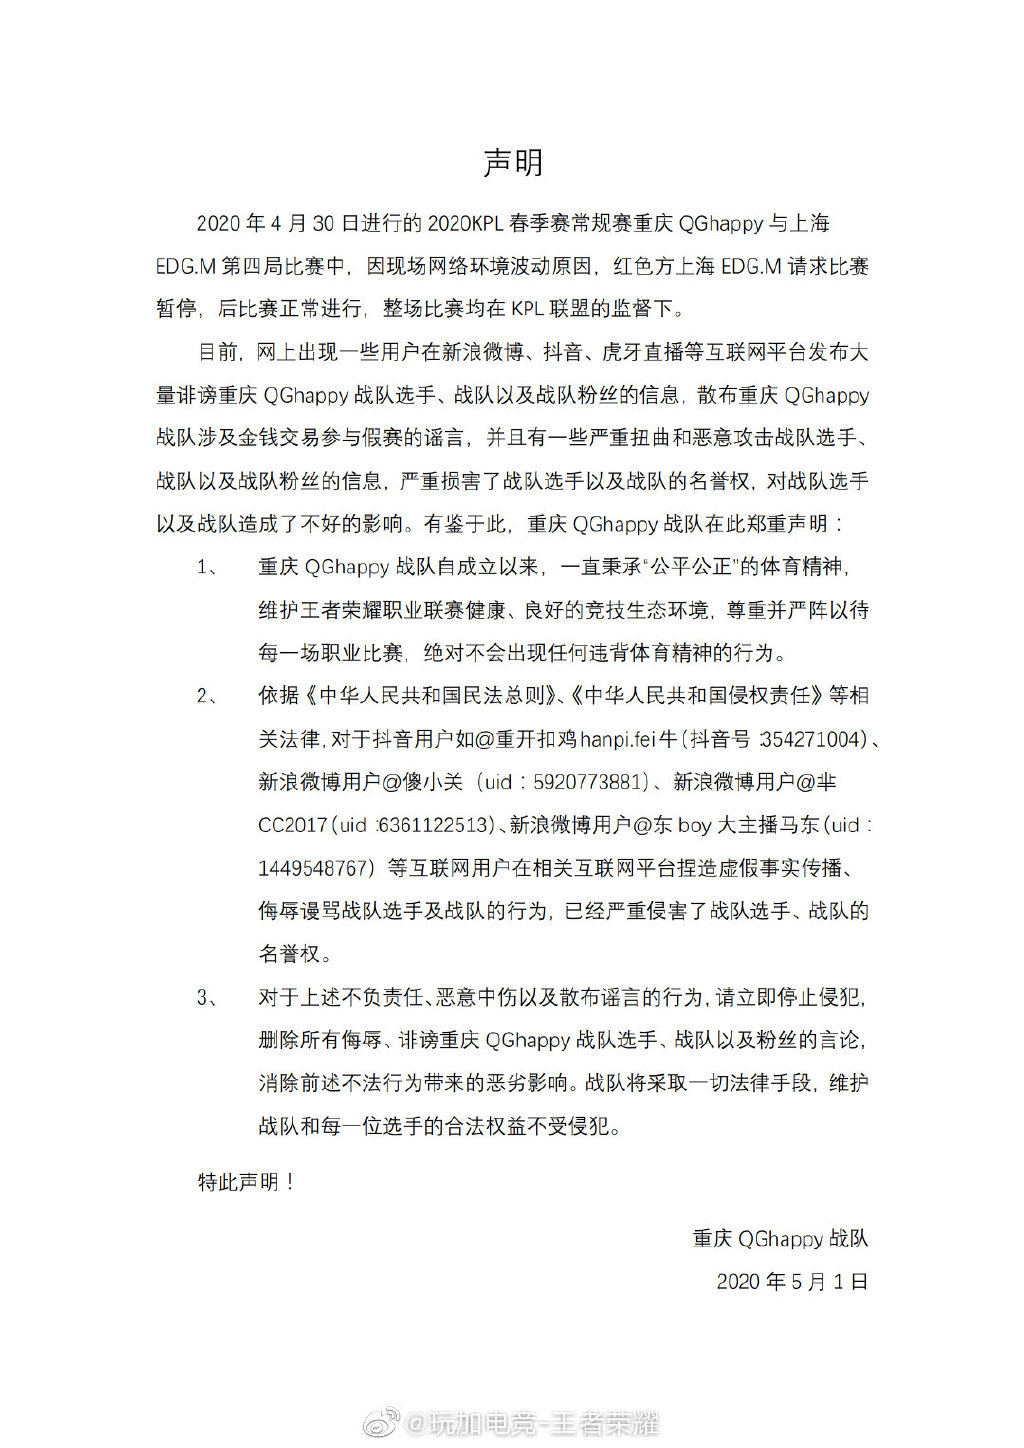 重庆QGhappy官方：始终秉承公平公正体育精神 将采取法律手段捍卫权益